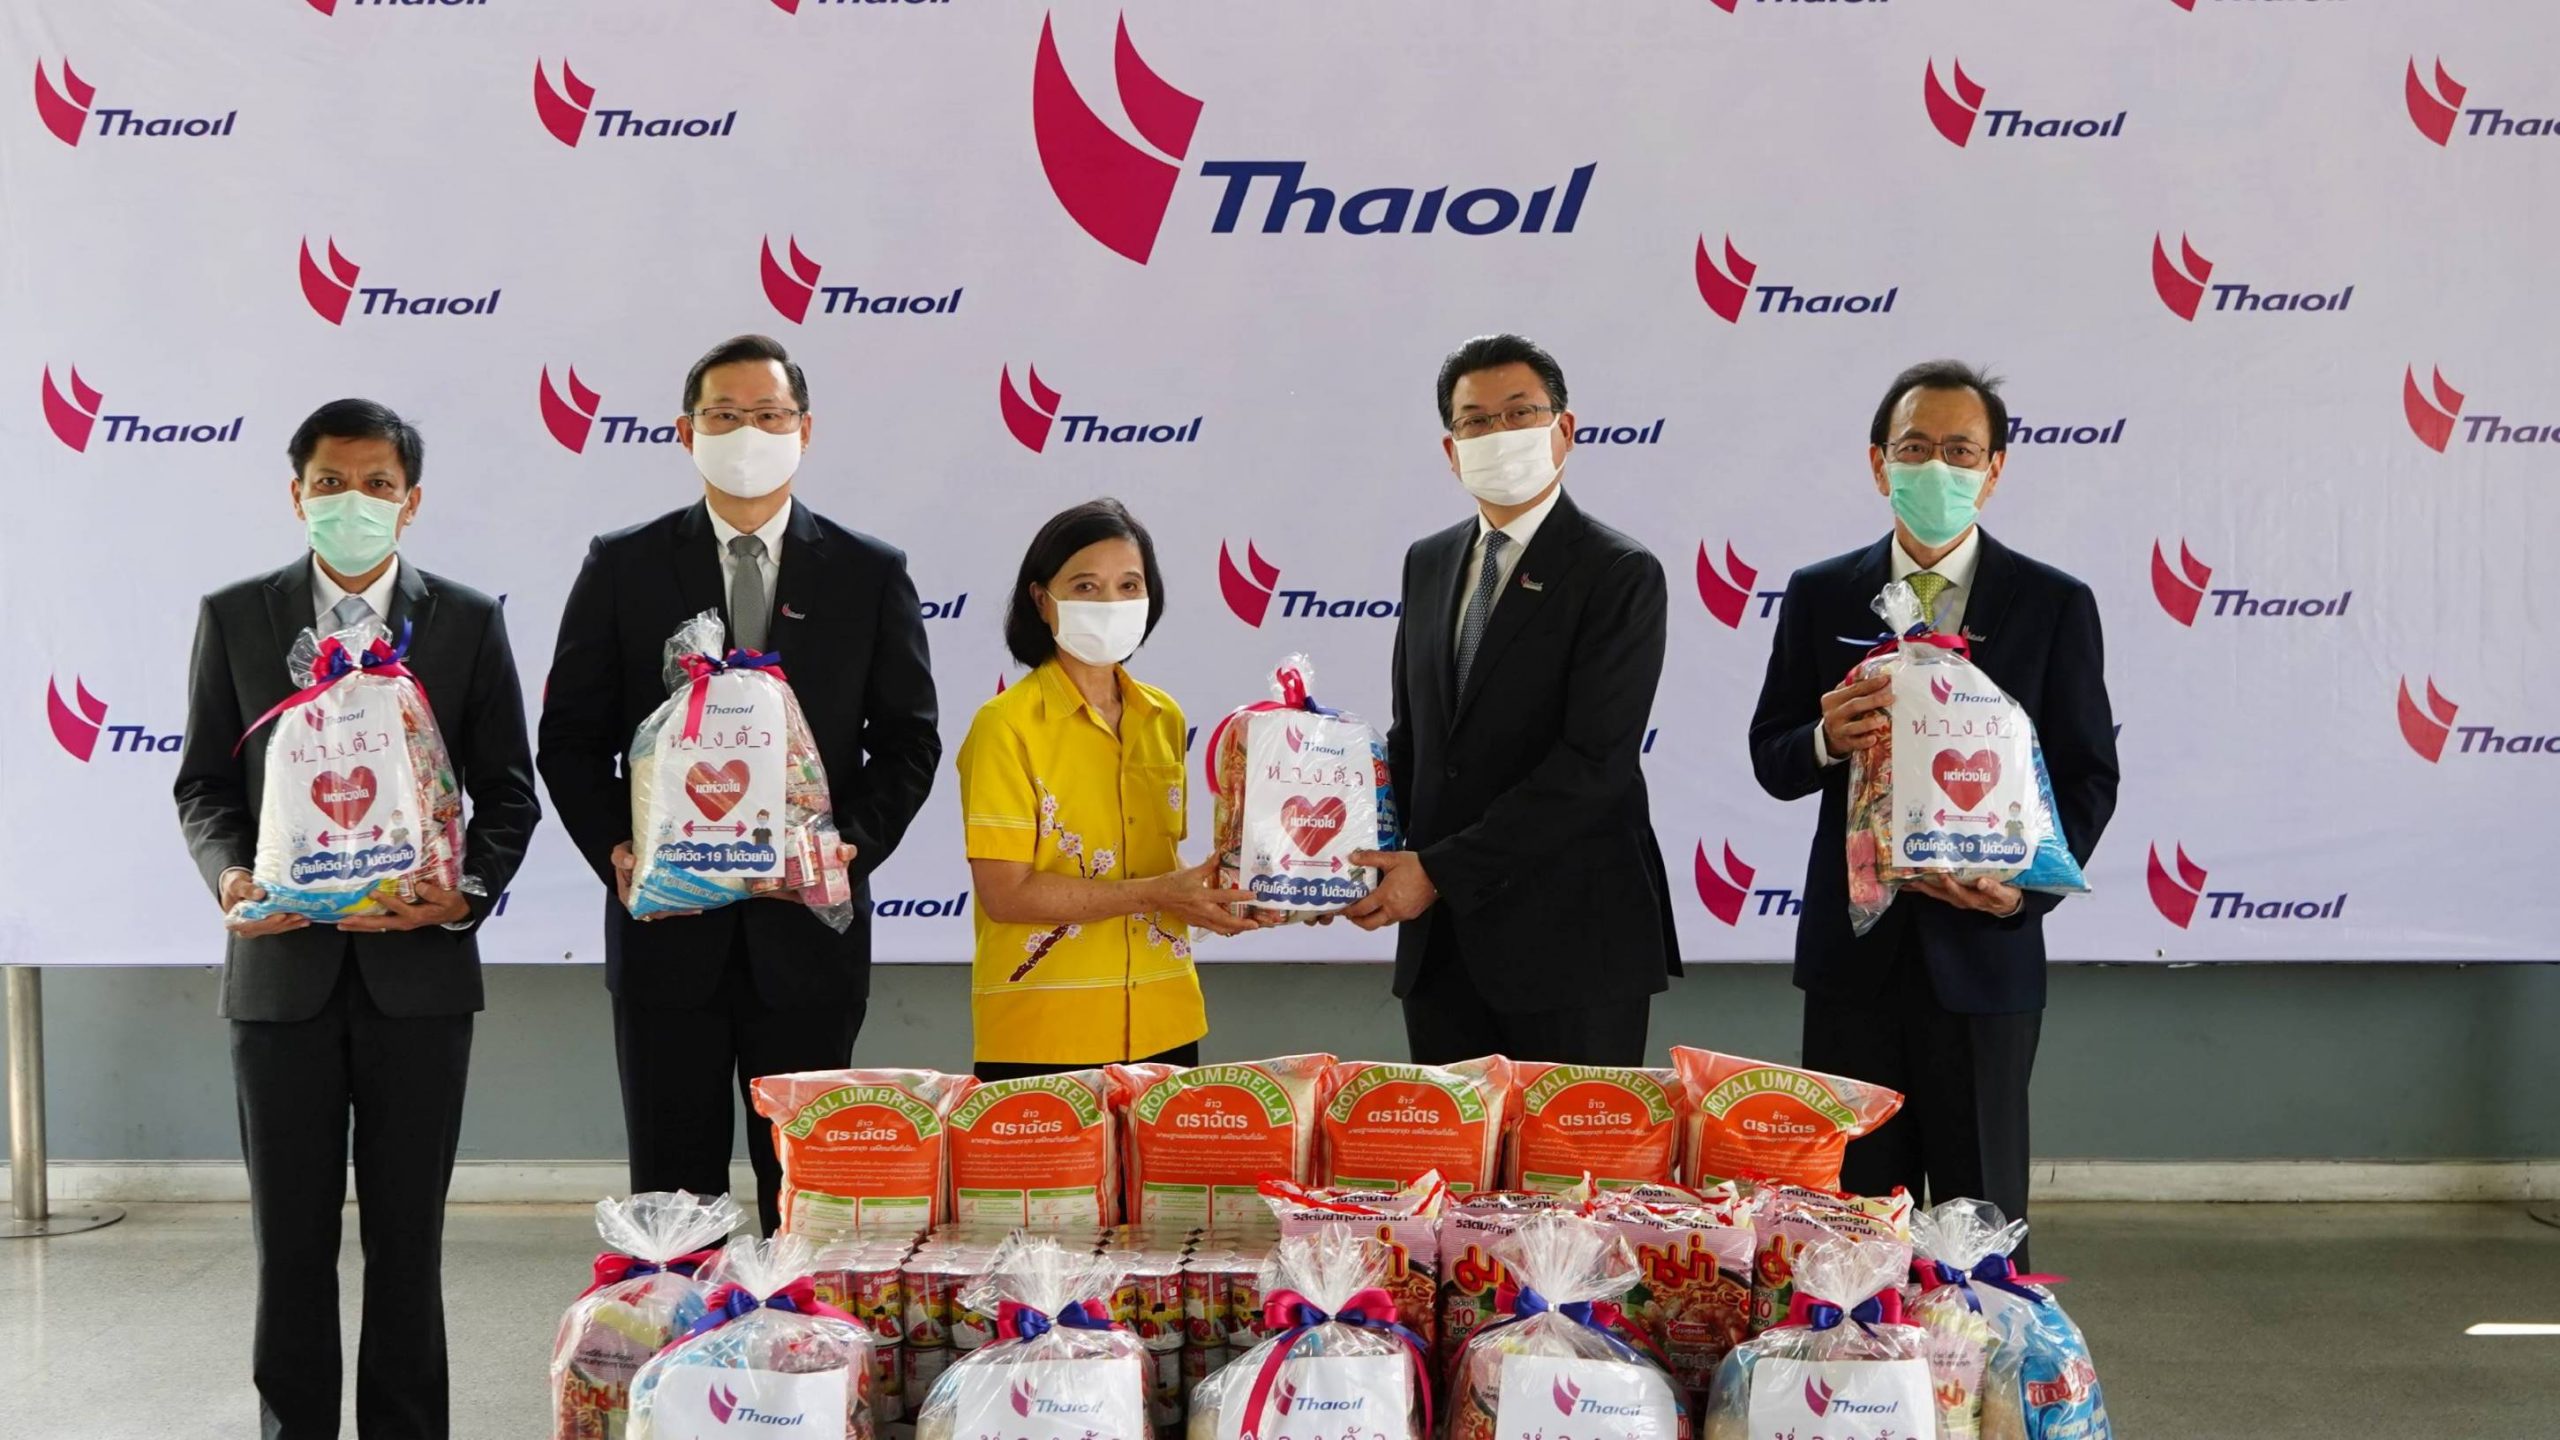 ภาพข่าว: กลุ่มไทยออยล์ส่งมอบถุงกำลังใจให้ประชาชนที่เดือดร้อนจากวิกฤต COVID-19 ในเขตเทศบาลนครแหลมฉบัง